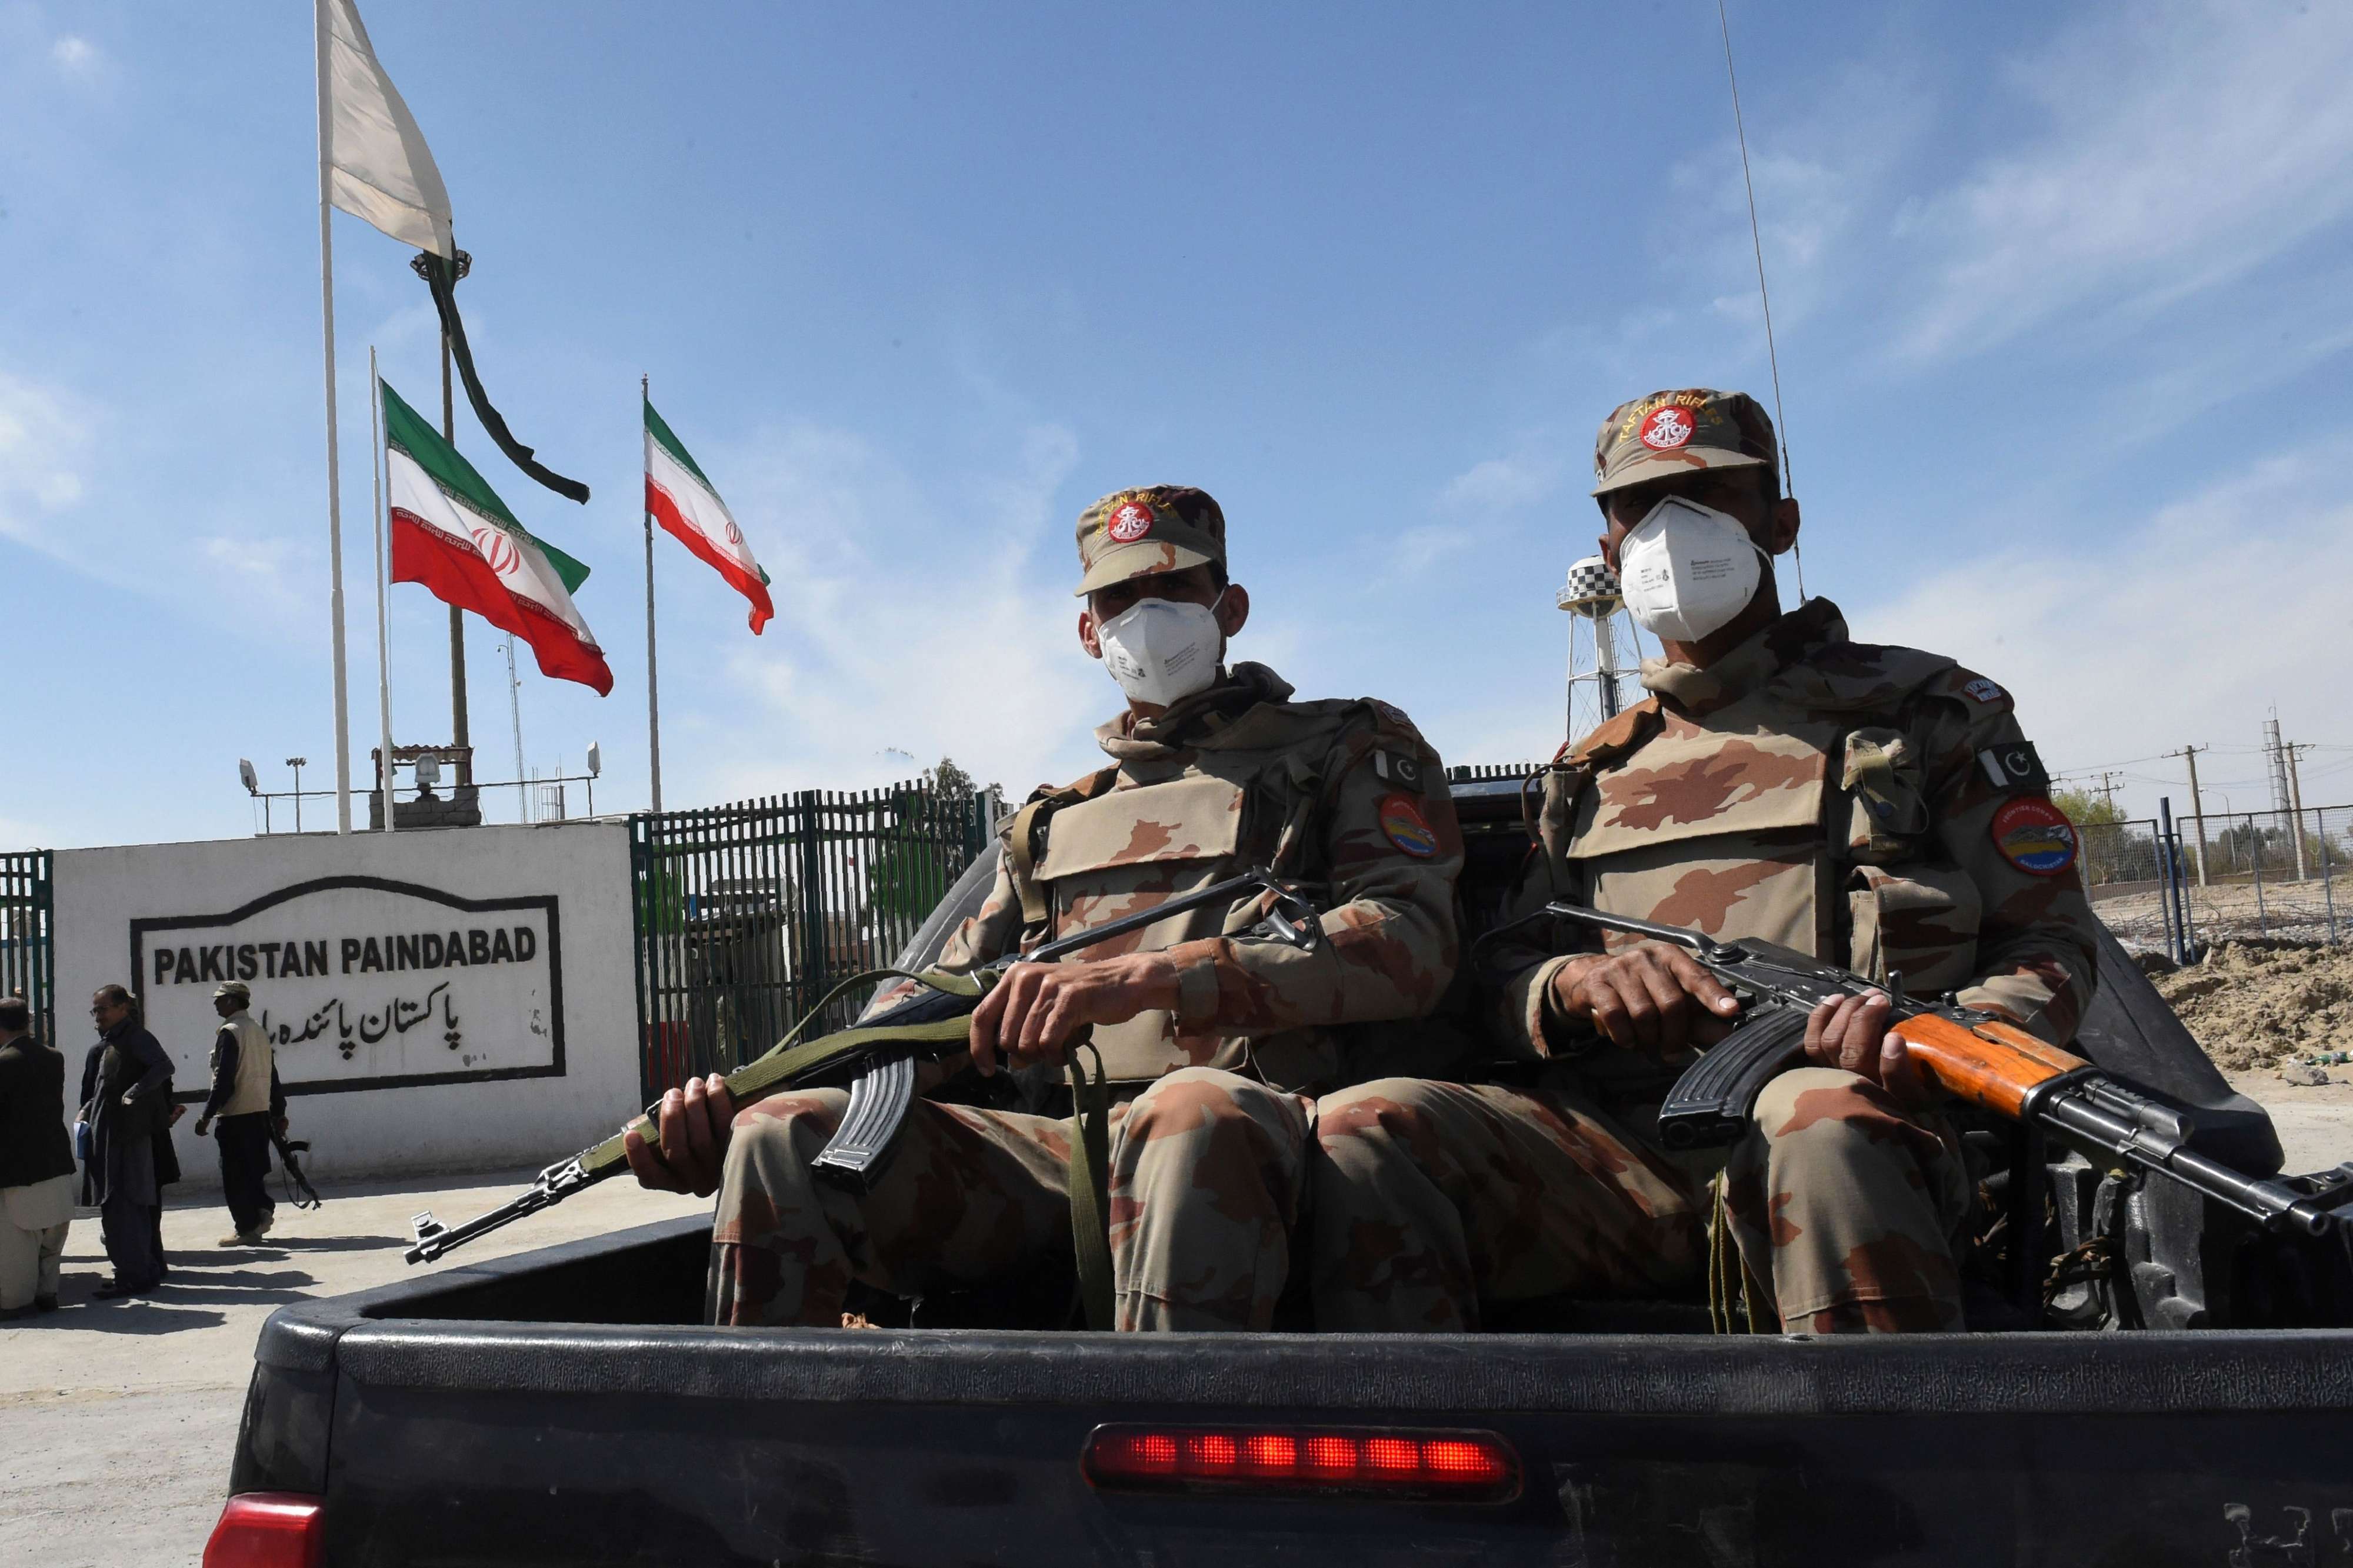 الأقنعة الواقية توشك أن تنفد في إيران والنظام يخفي عدد المصابين